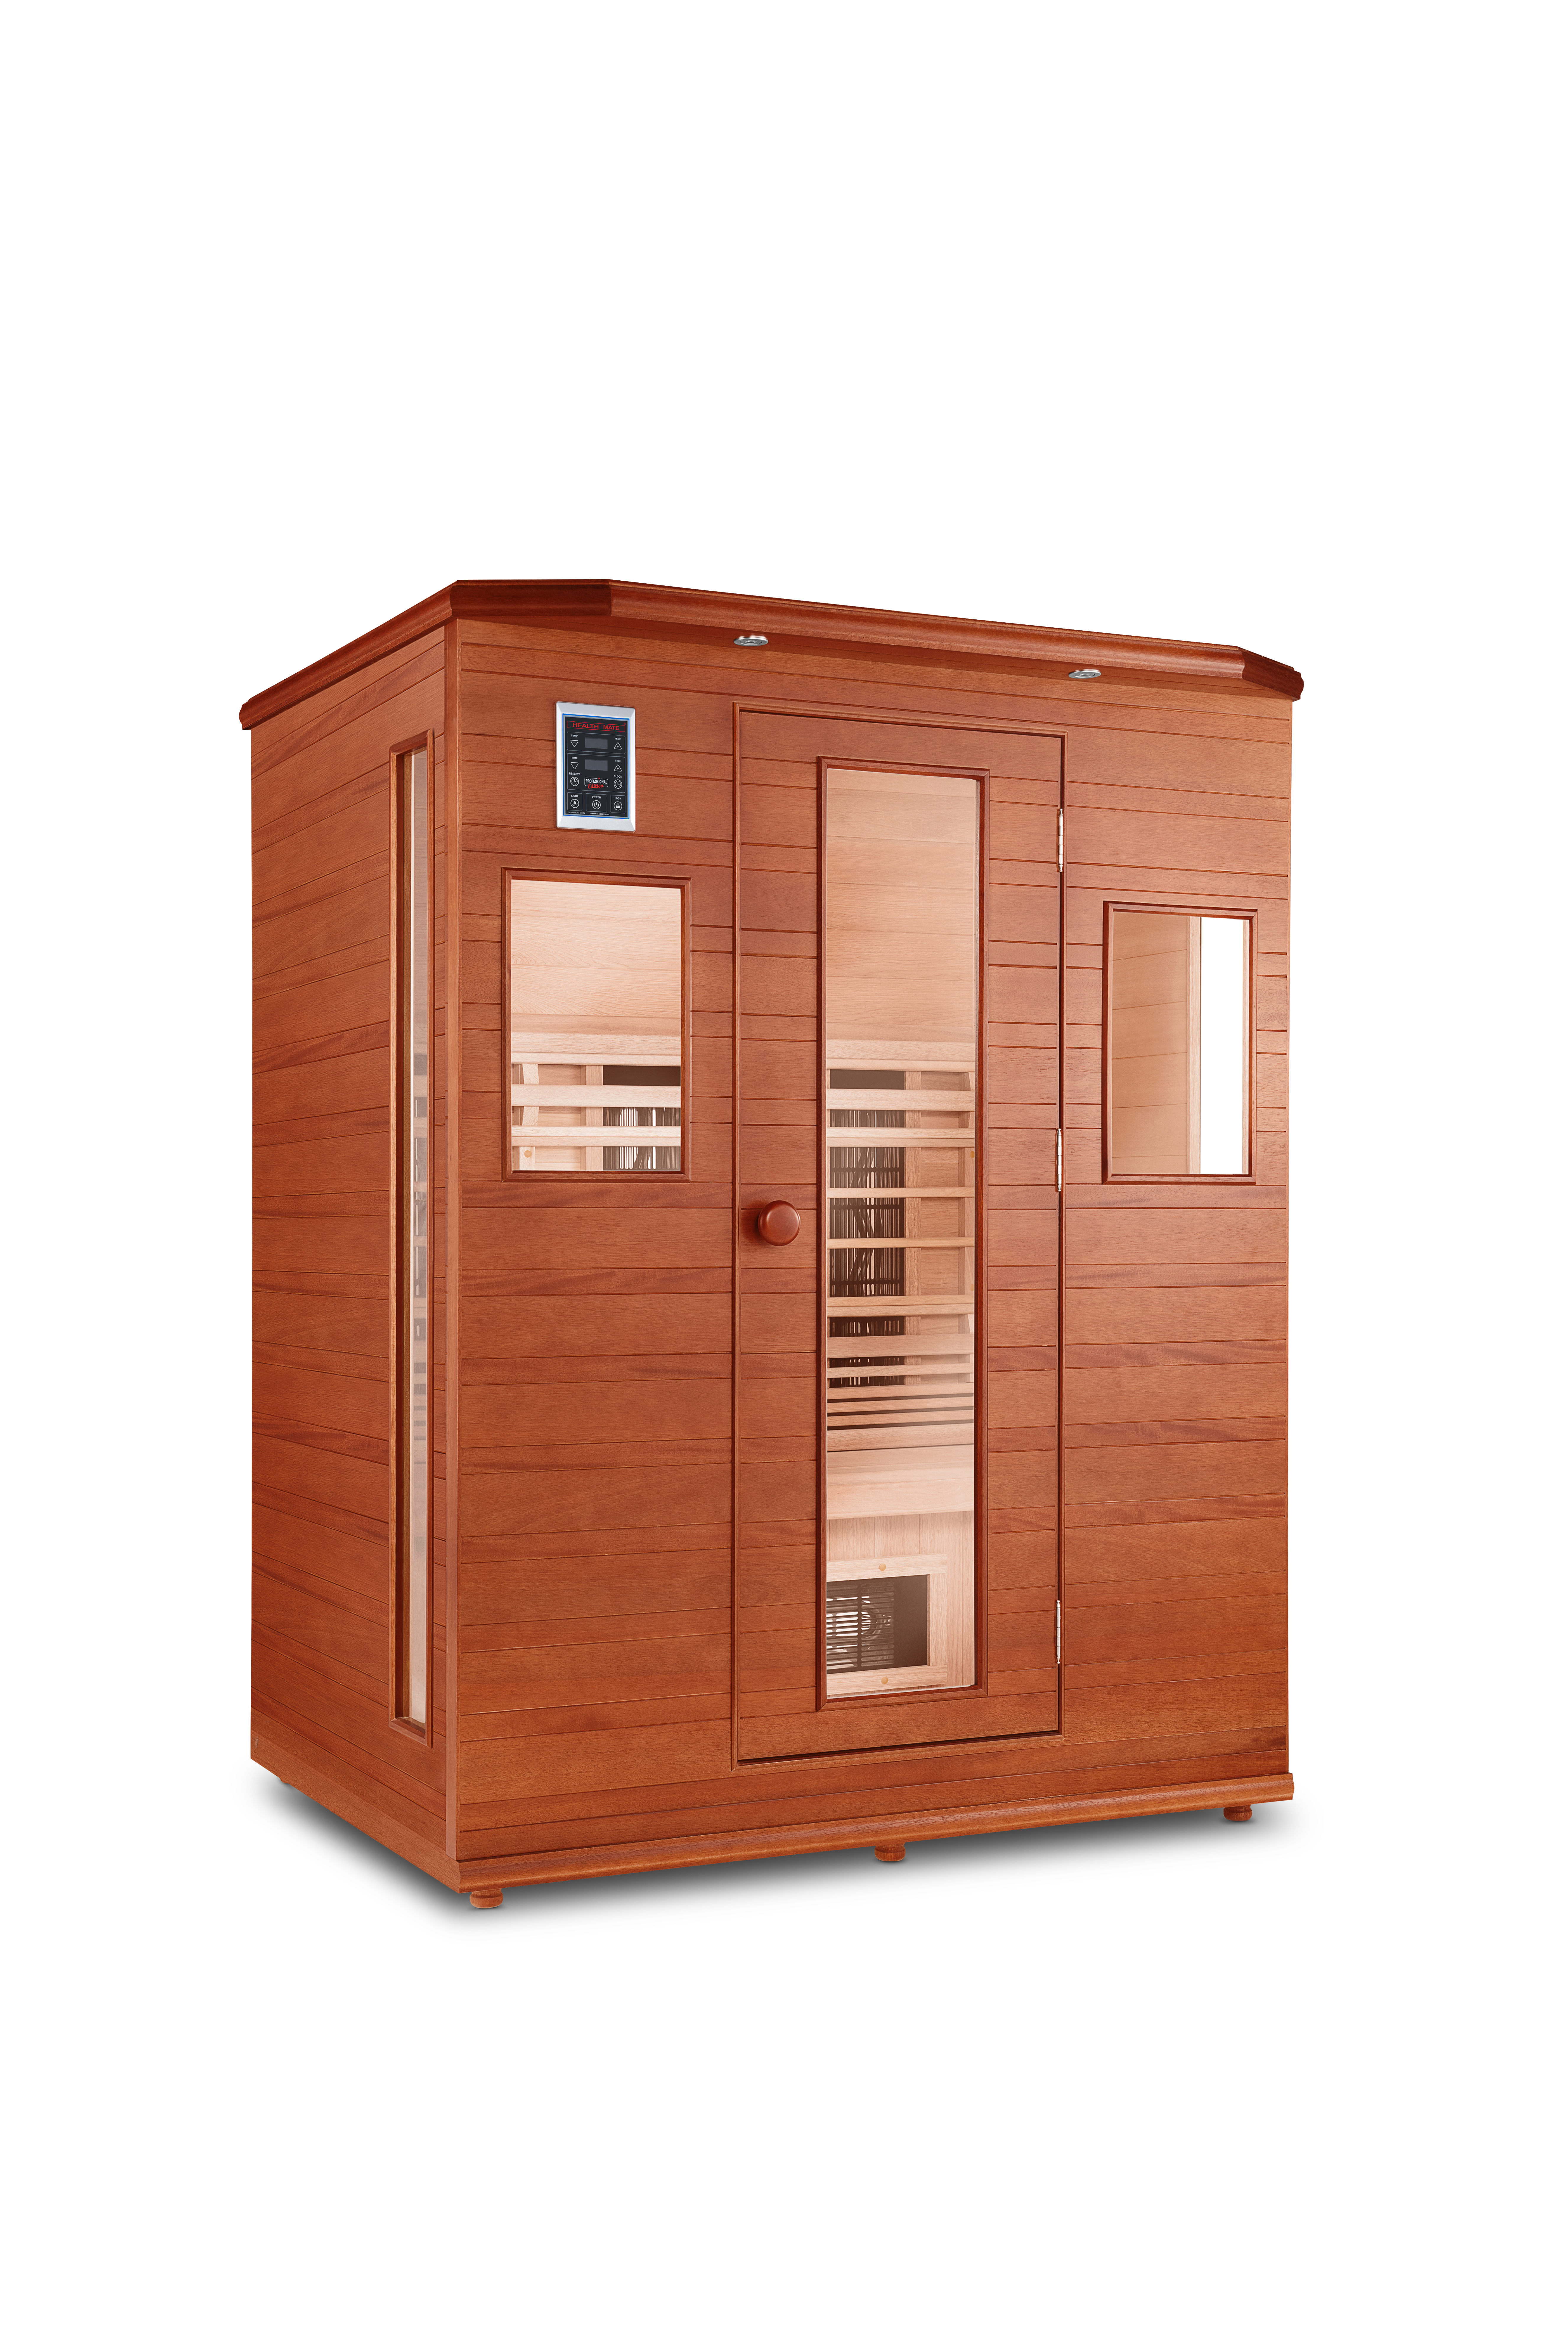 Enrich 3 full spectrum infrared sauna